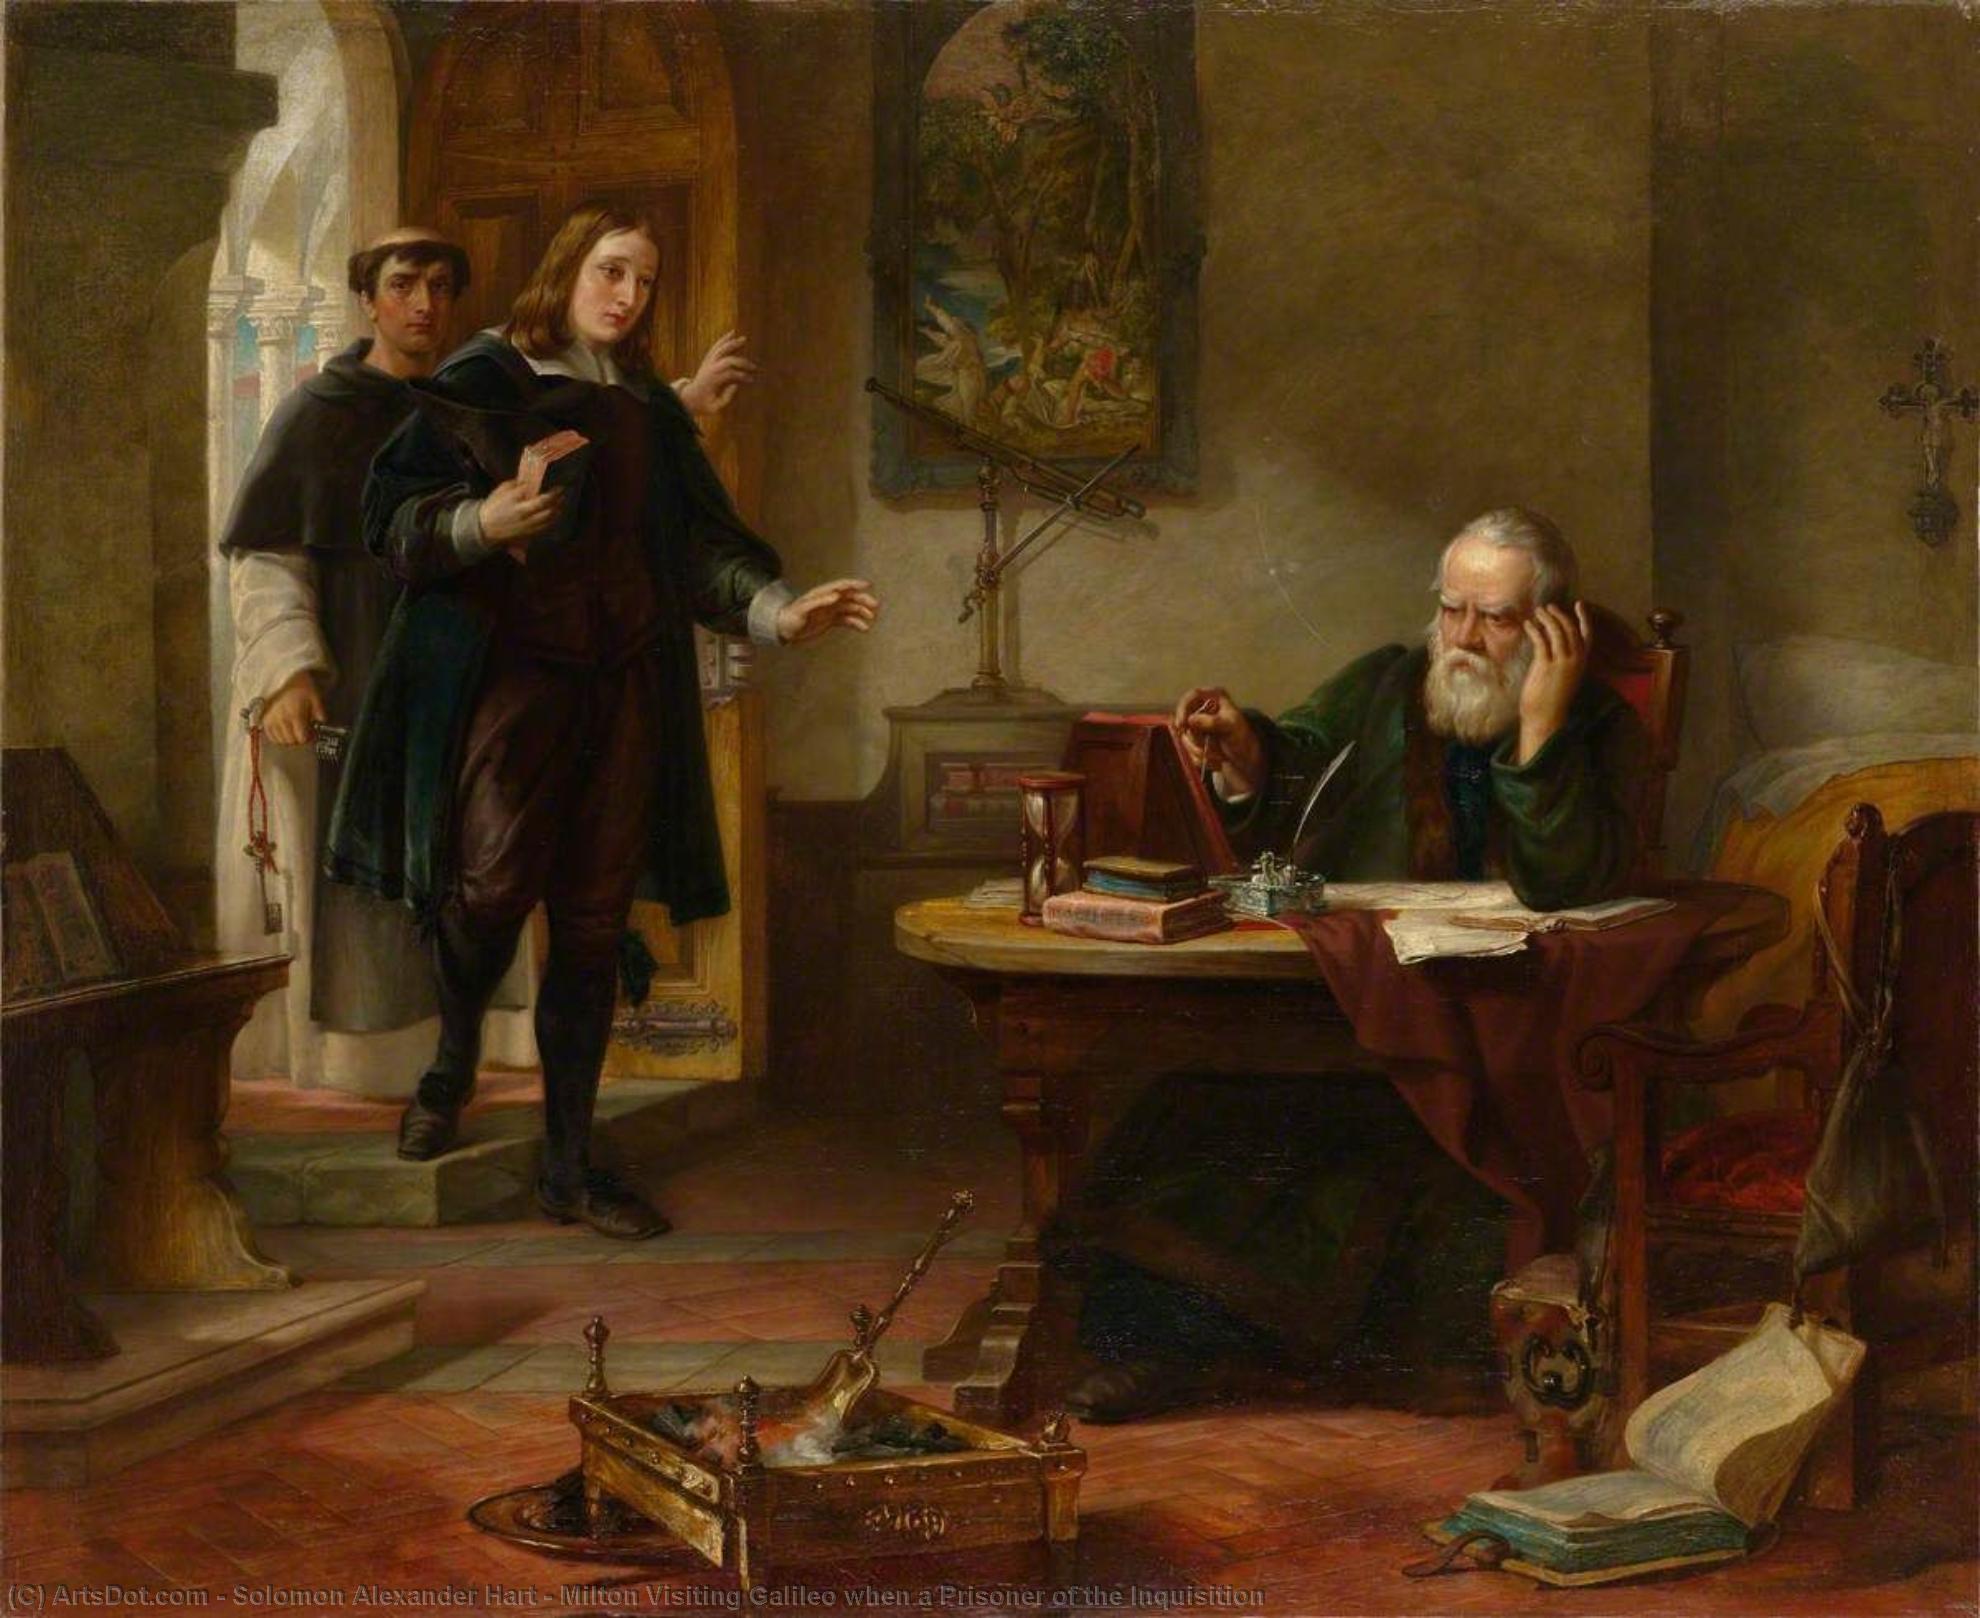 Compre Museu De Reproduções De Arte Milton Visitando Galileu quando um Prisioneiro da Inquisição, 1847 por Solomon Alexander Hart (1806-1881, United Kingdom) | ArtsDot.com